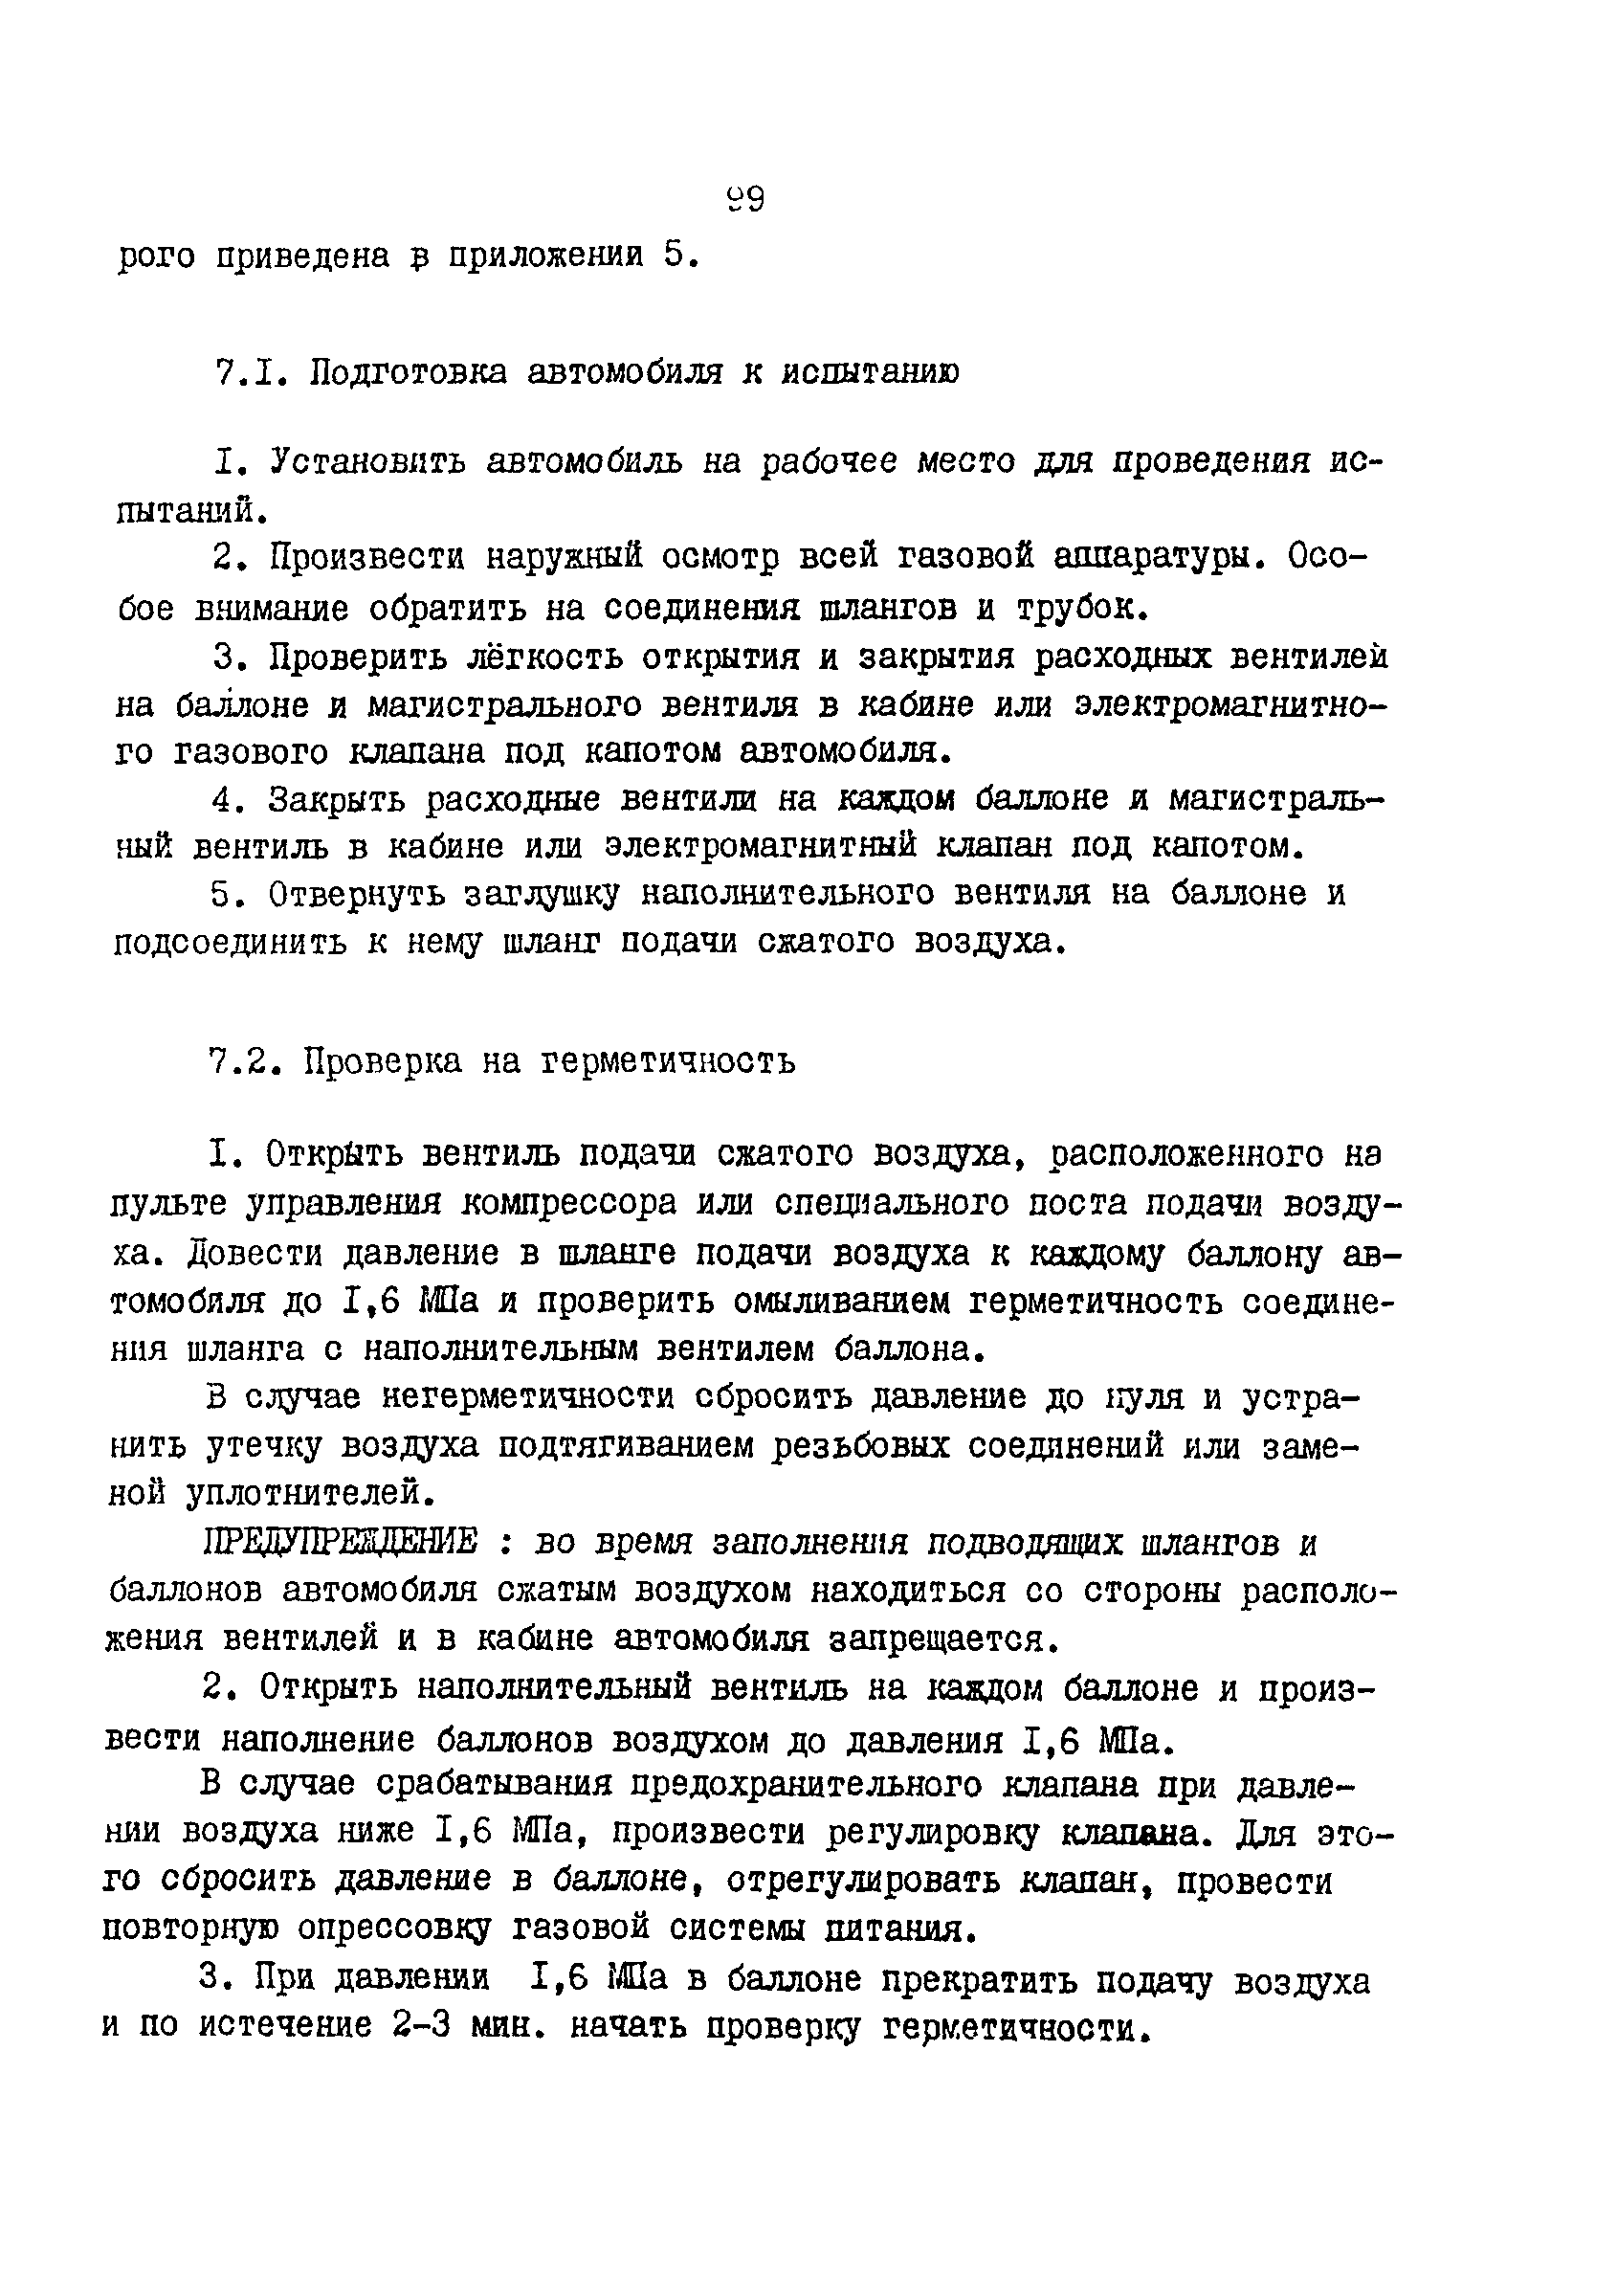 РД 200-РСФСР-12-0176-87